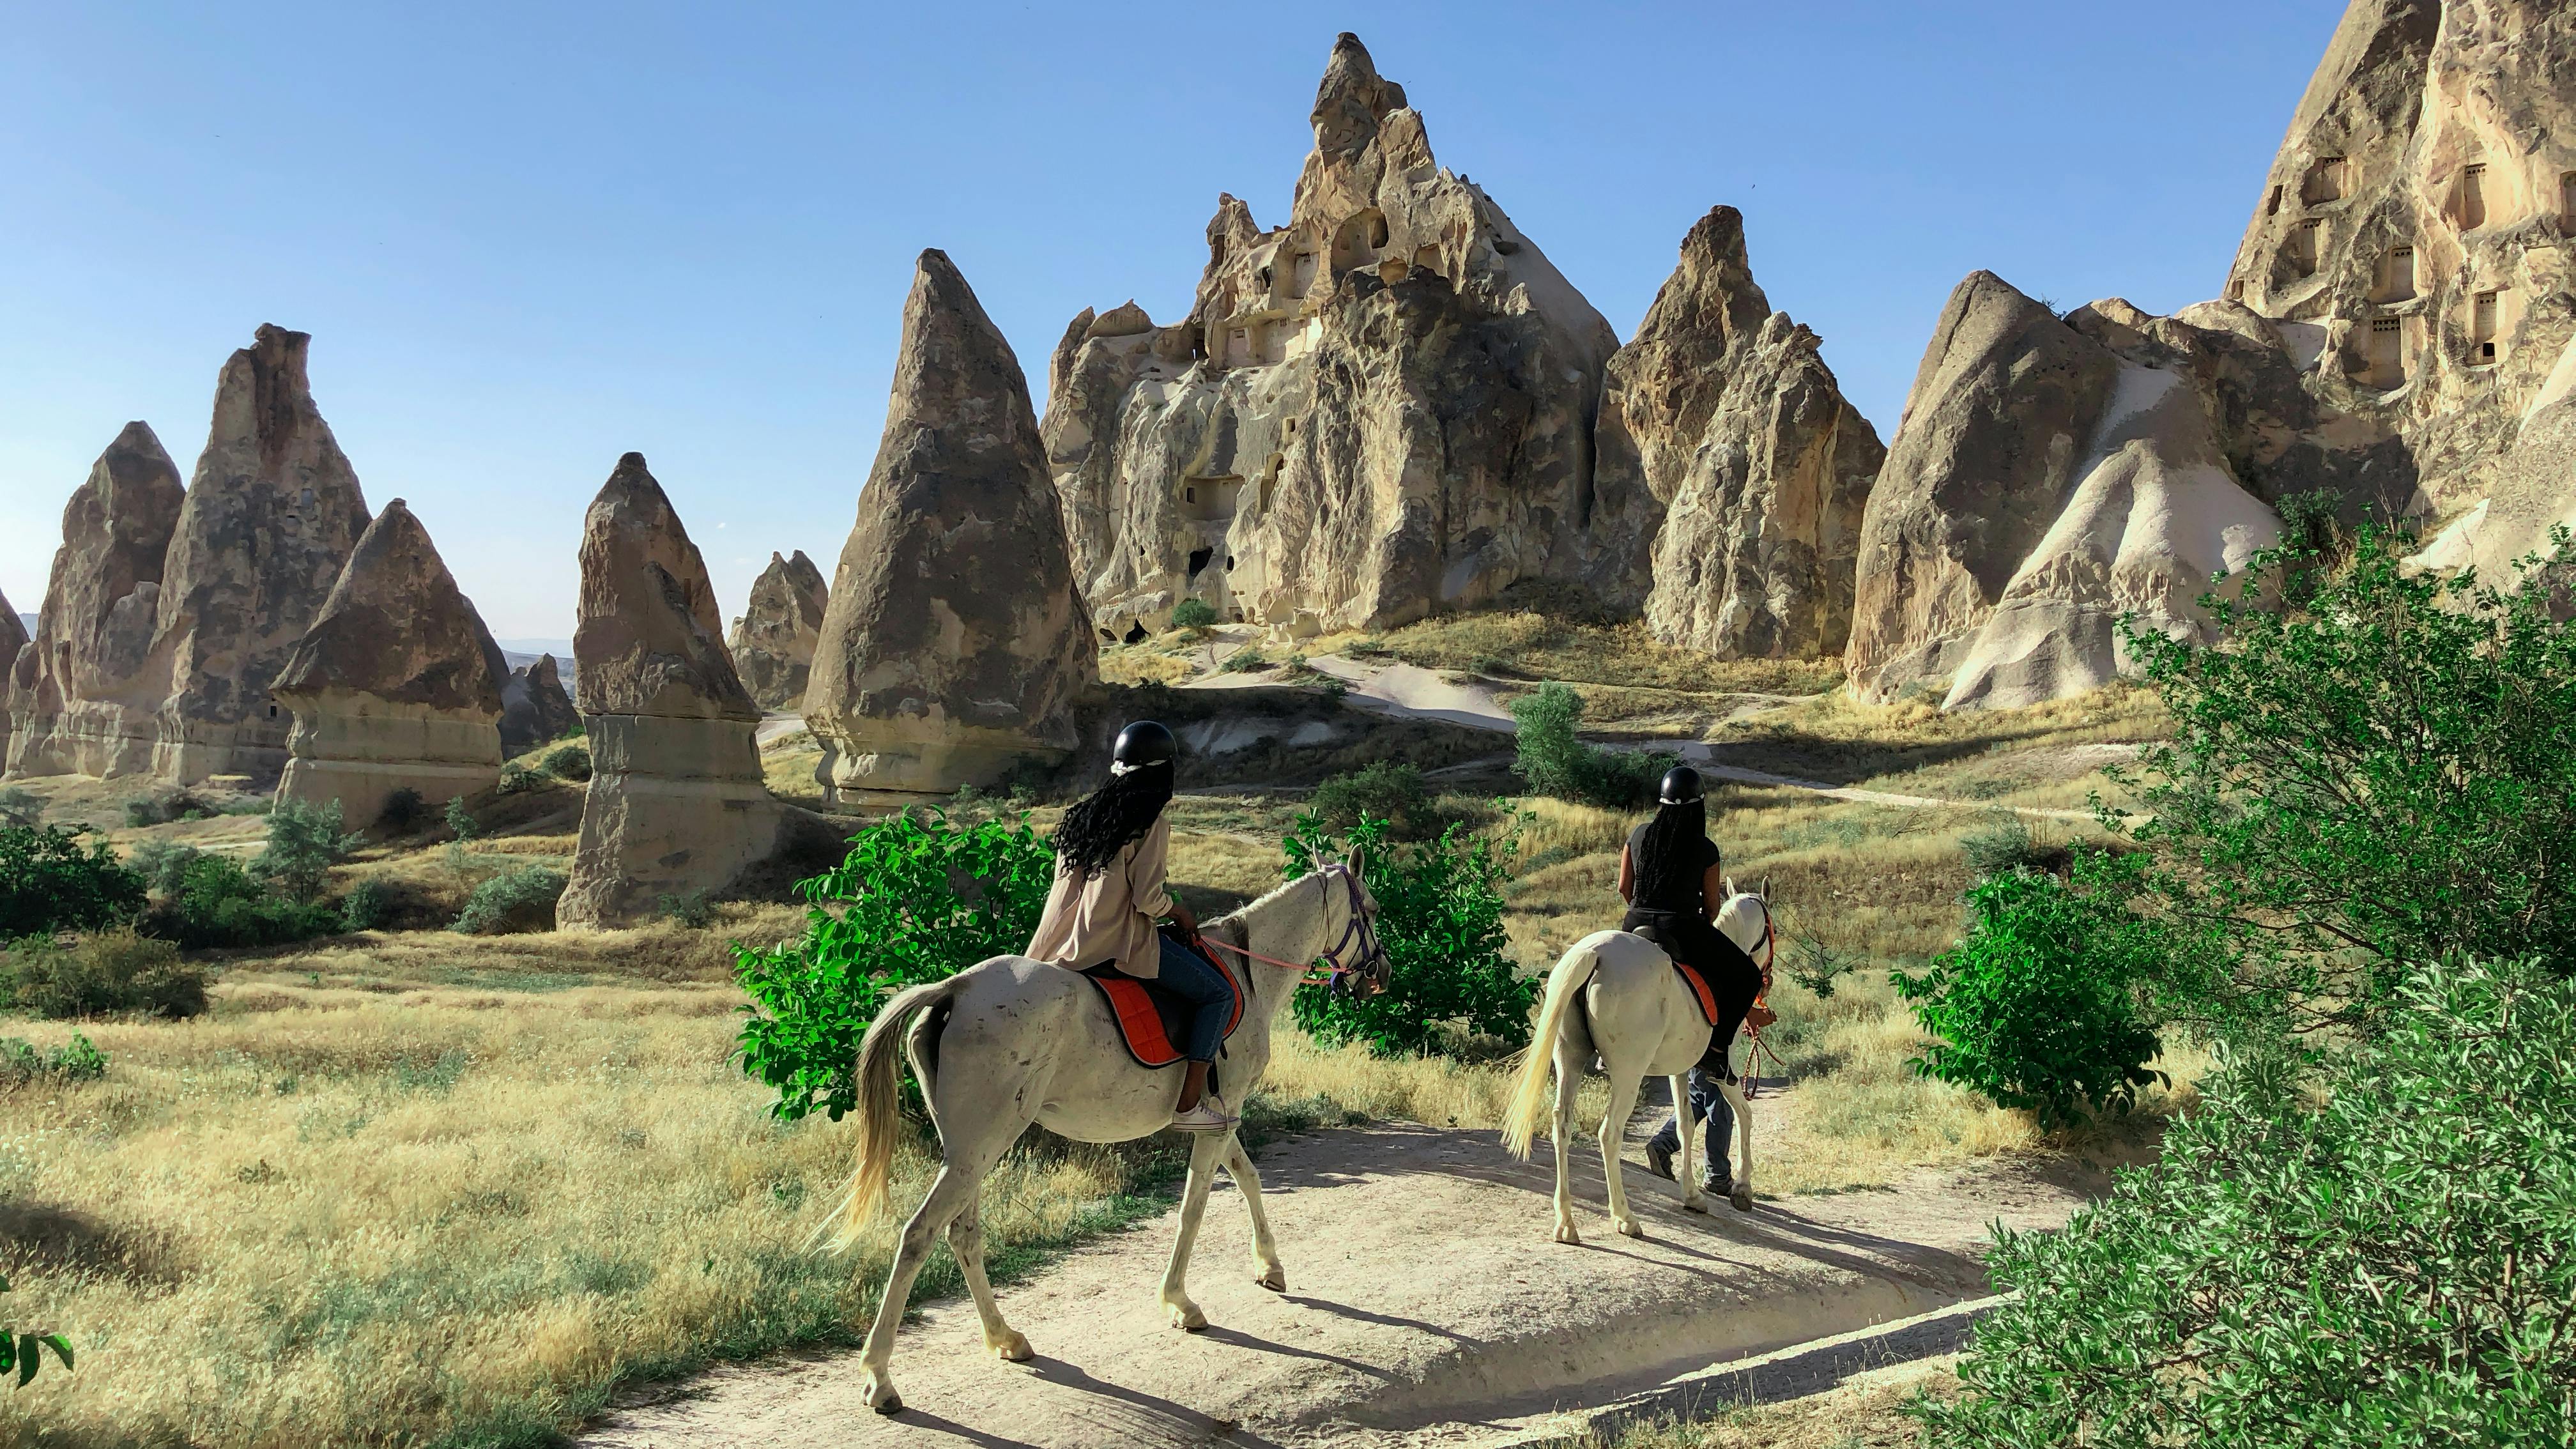 Horse riding experience in Cappadocia's valleys